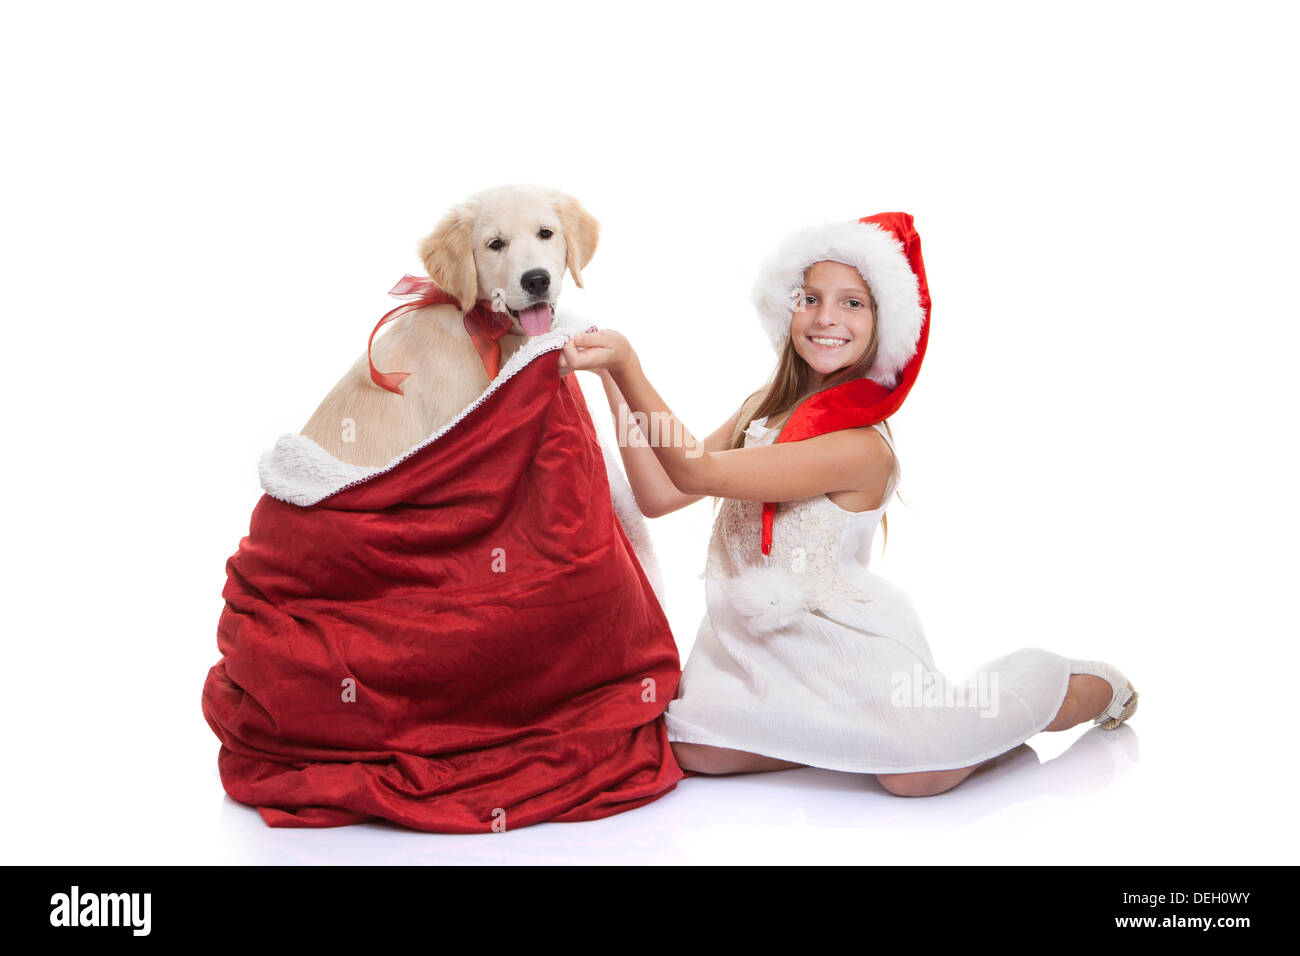 Vacances de Noël cadeau chien animal de childs Banque D'Images